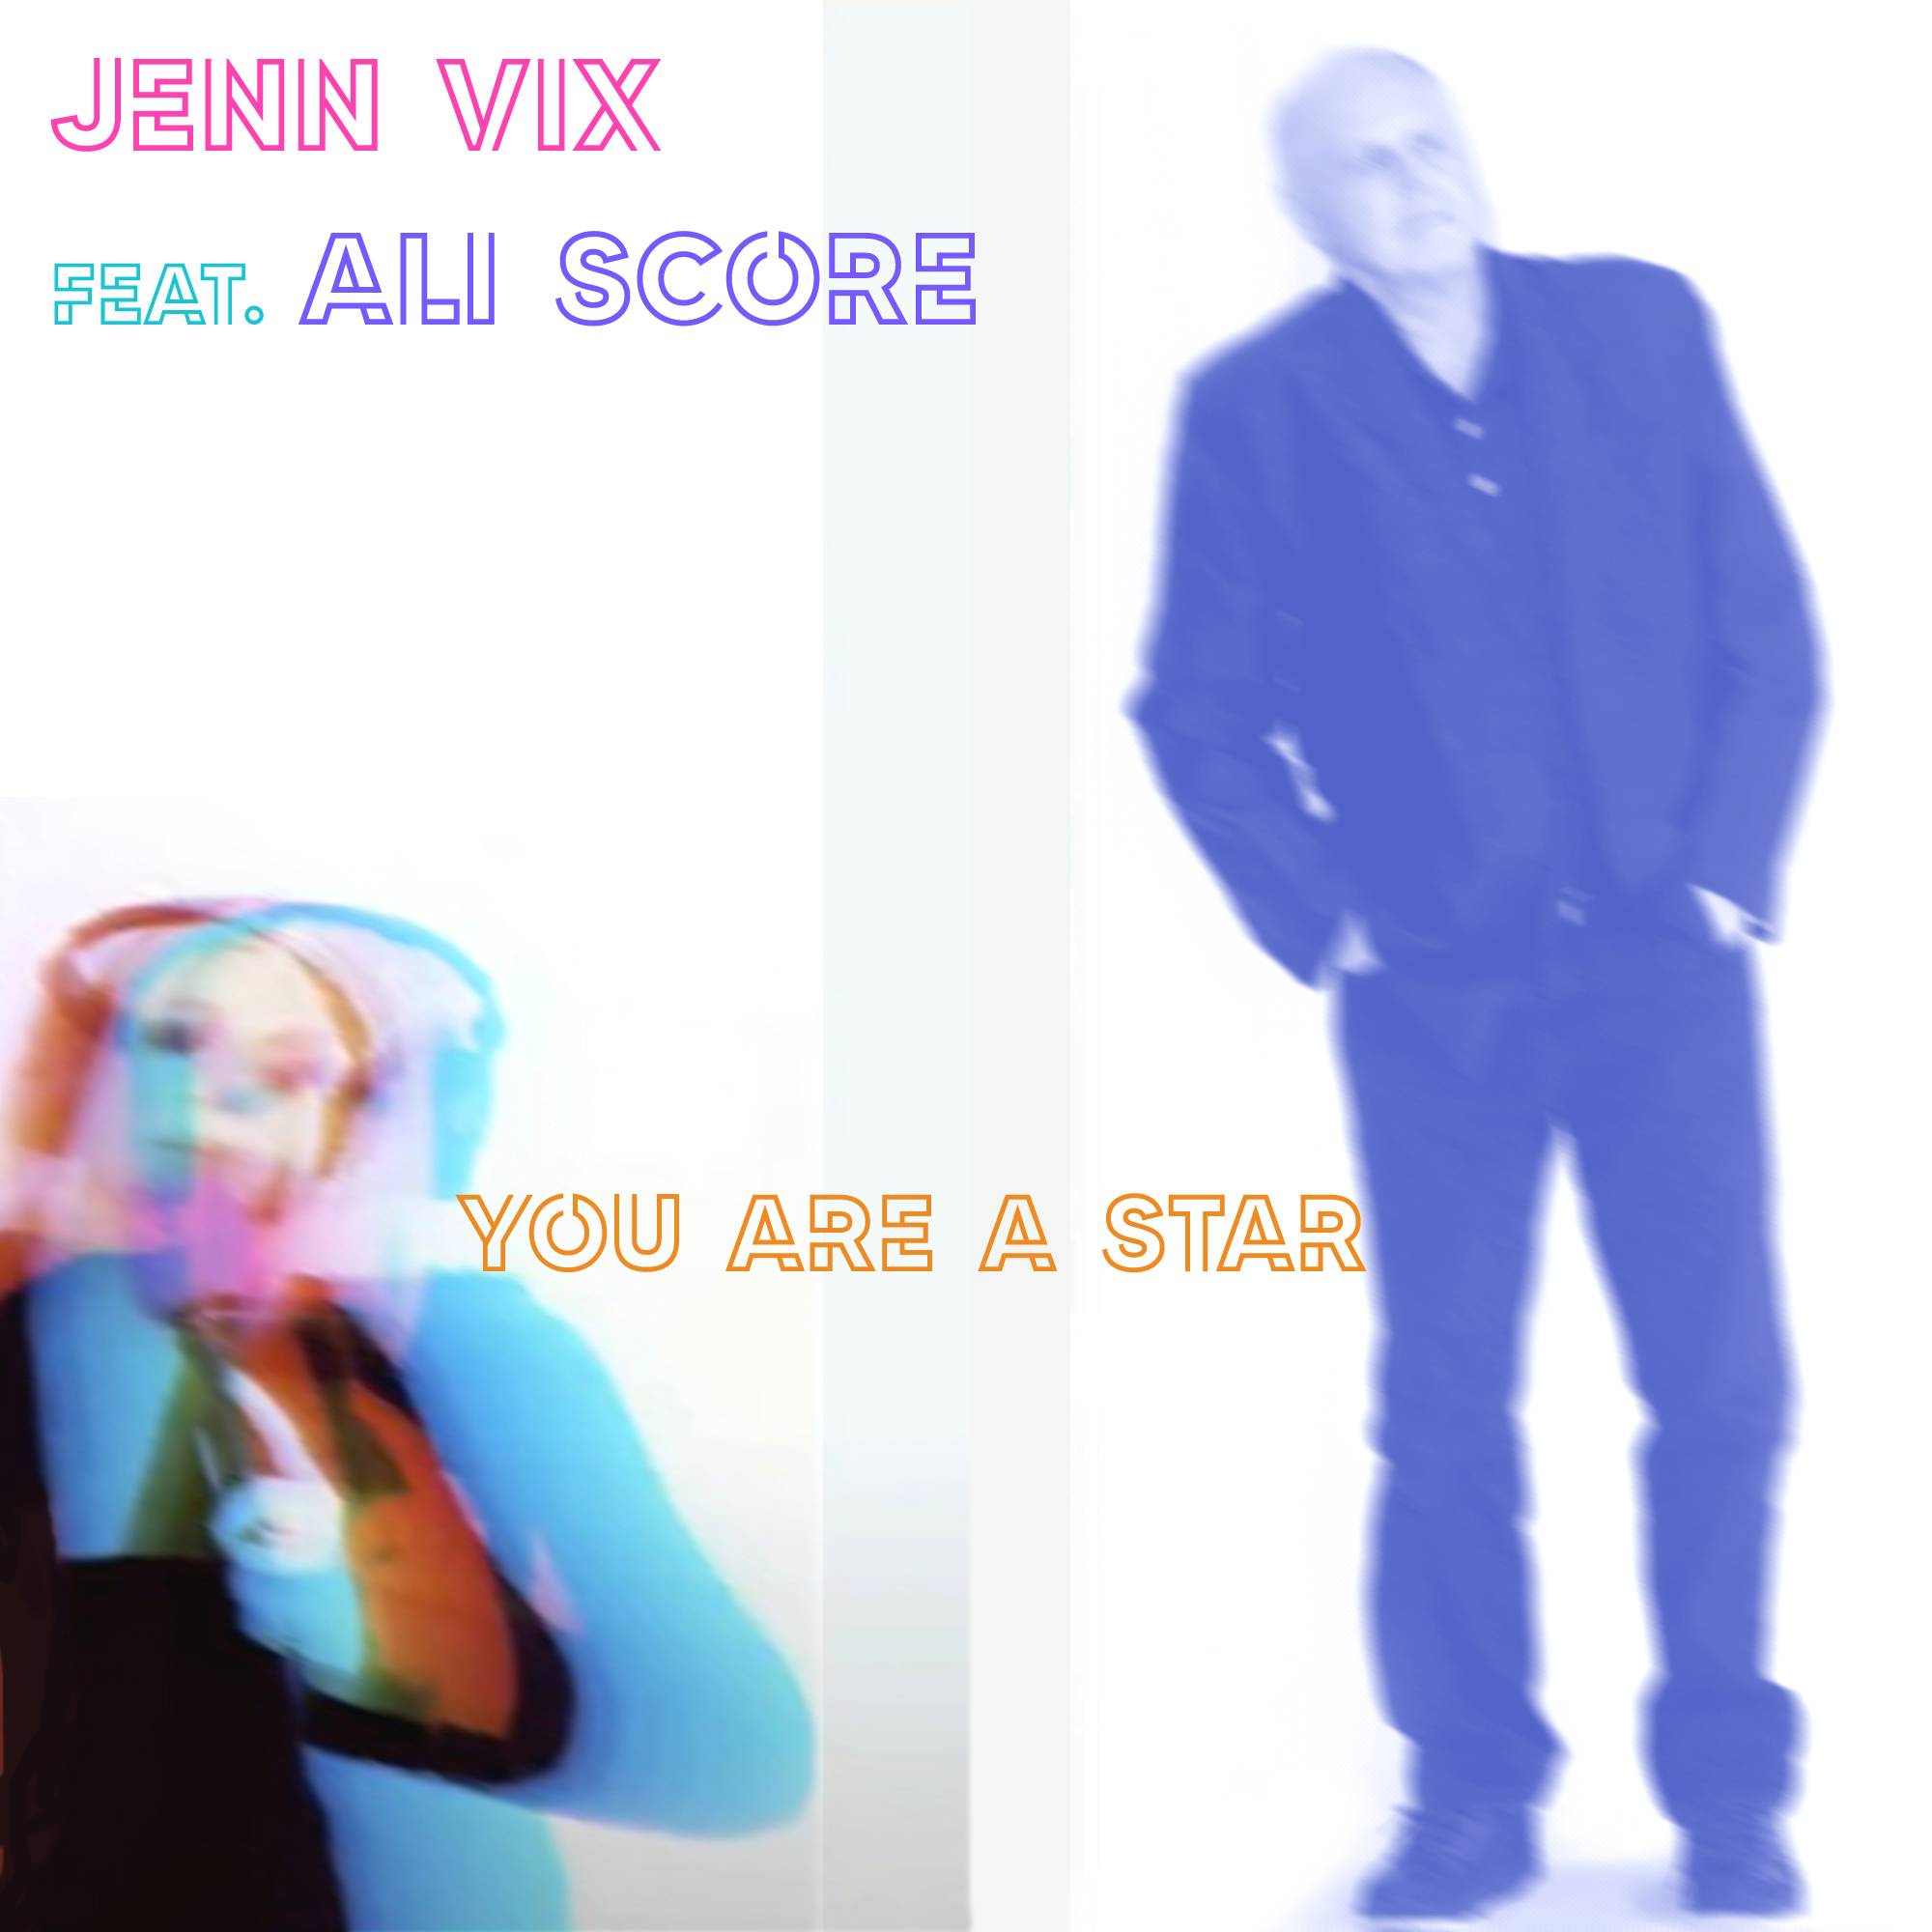 STEREO EMBERS VIDEO PREMIER – Retrowave Gem “You Are A Star” from Perennial Alt.Pop Artist Jenn Vix + A Flock of Seagulls Drummer Ali Score